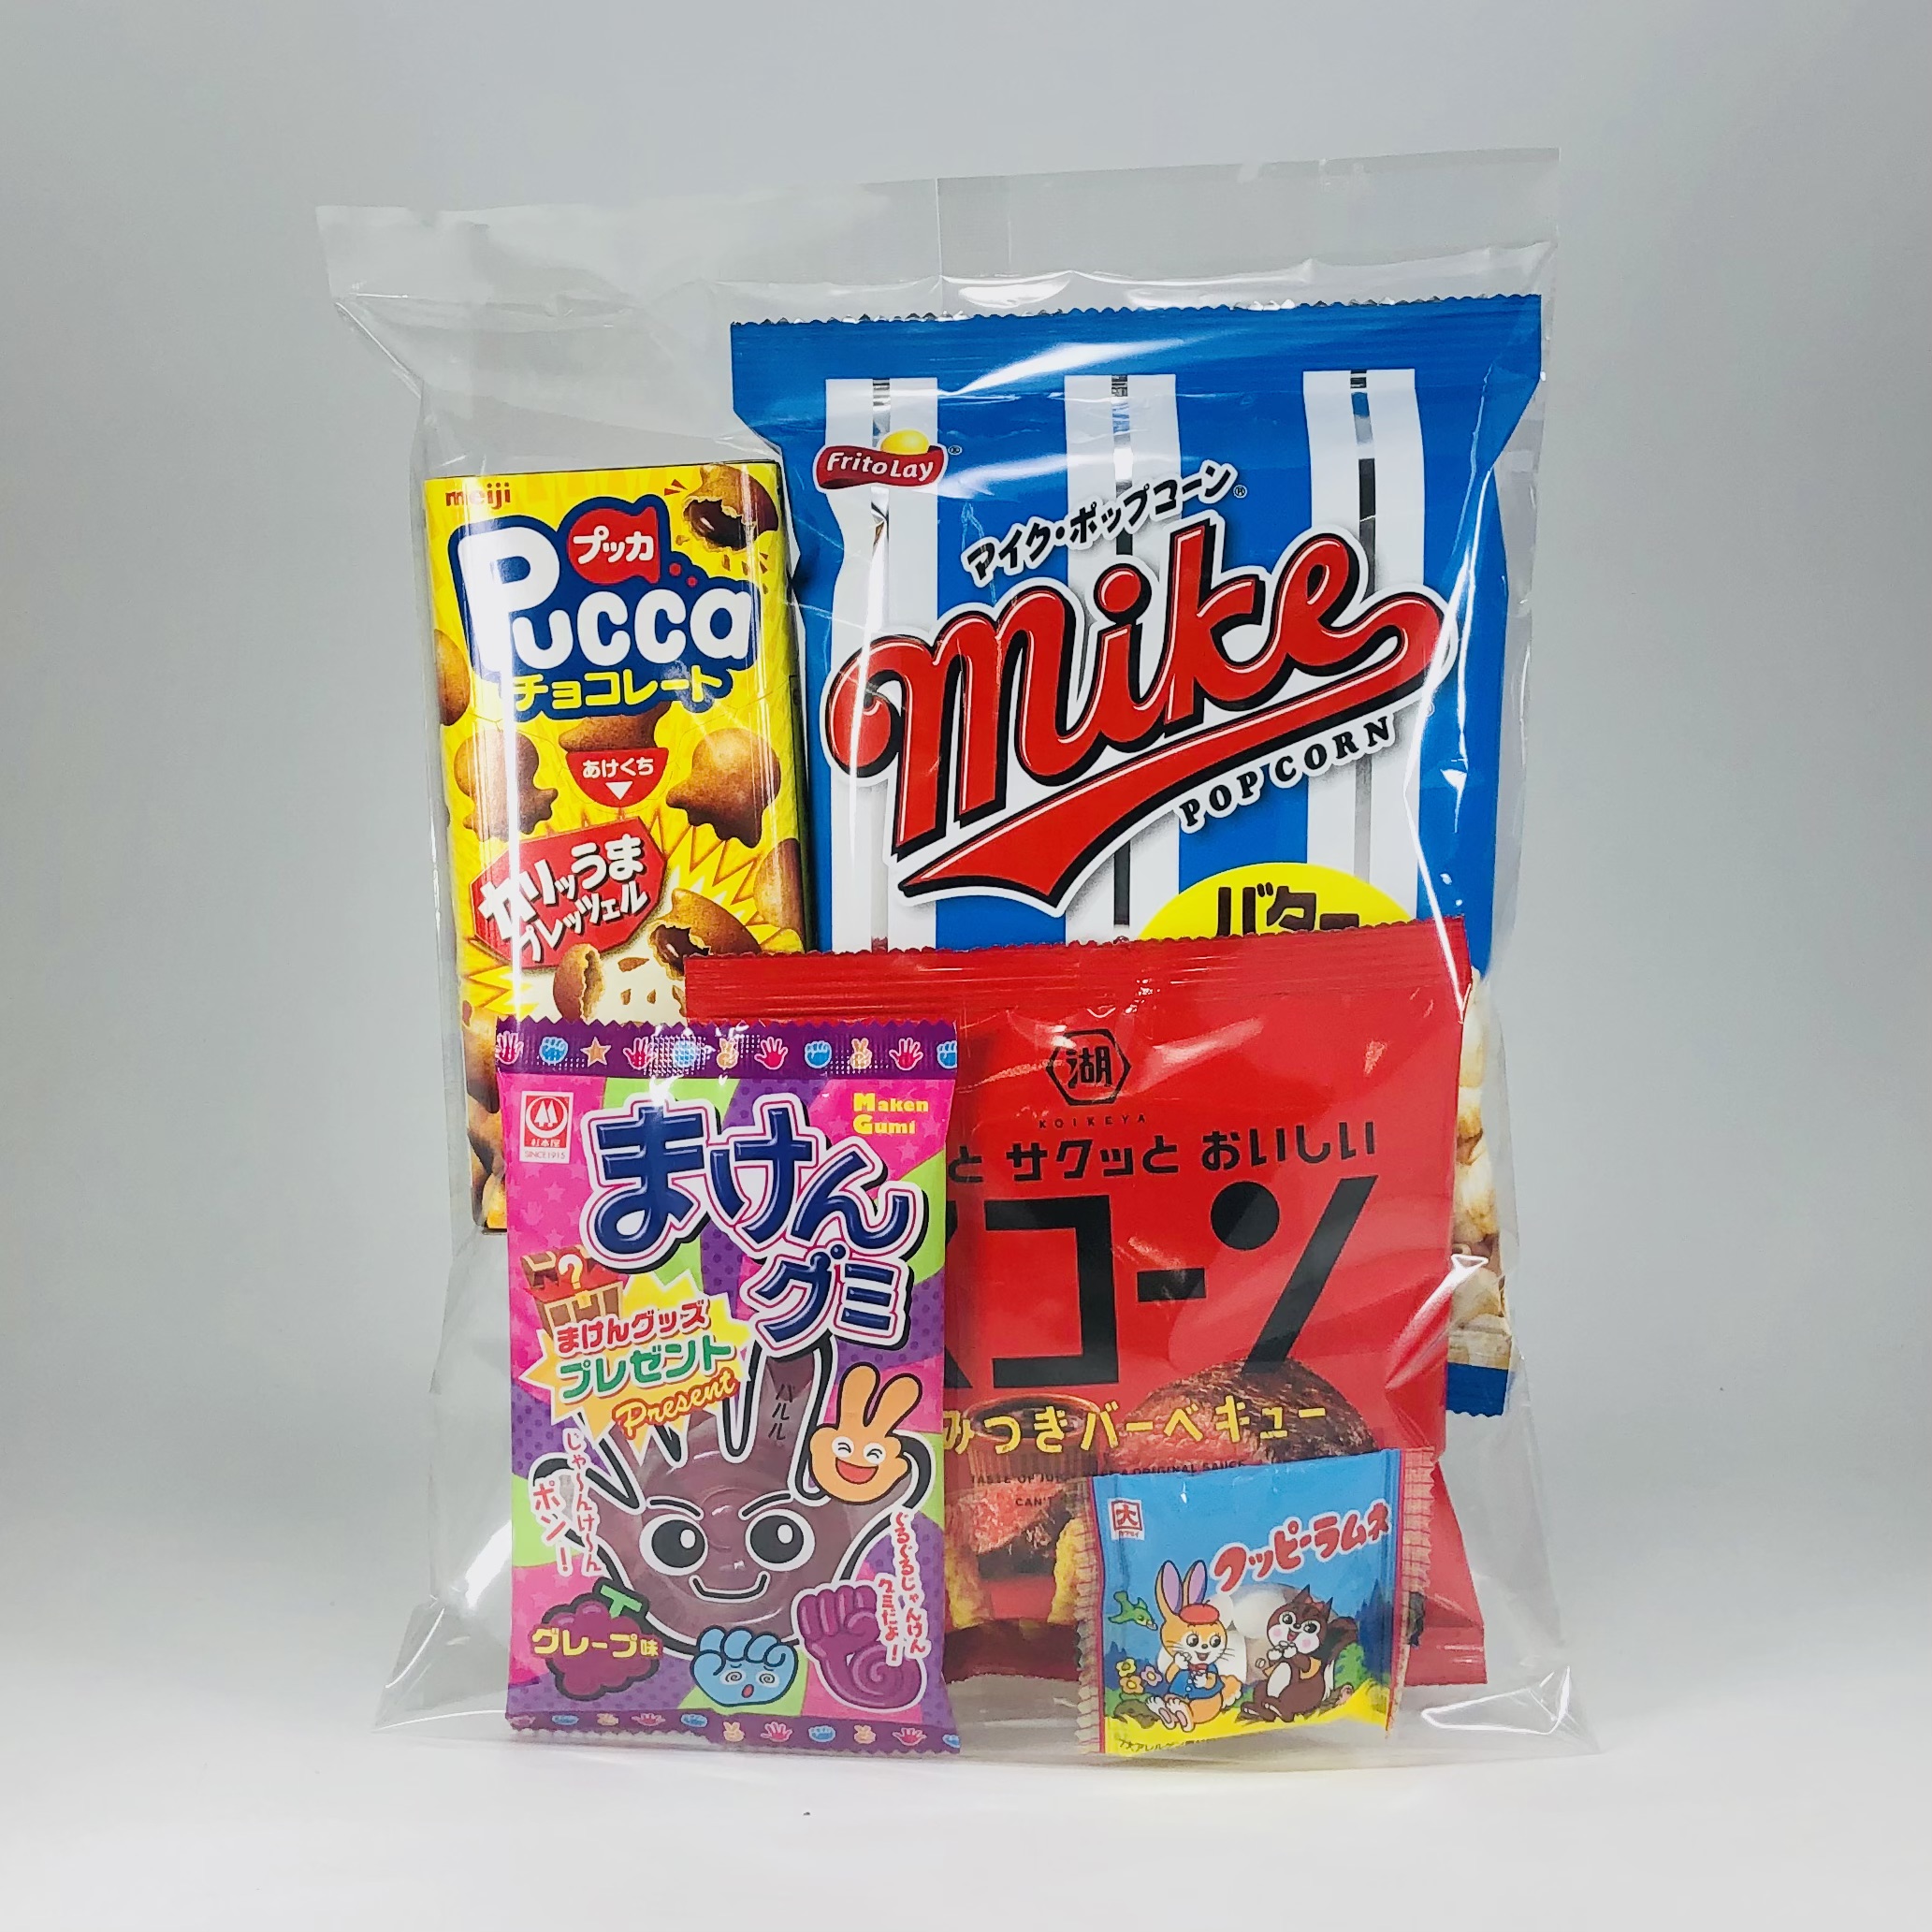 275円お菓子袋詰め(2)